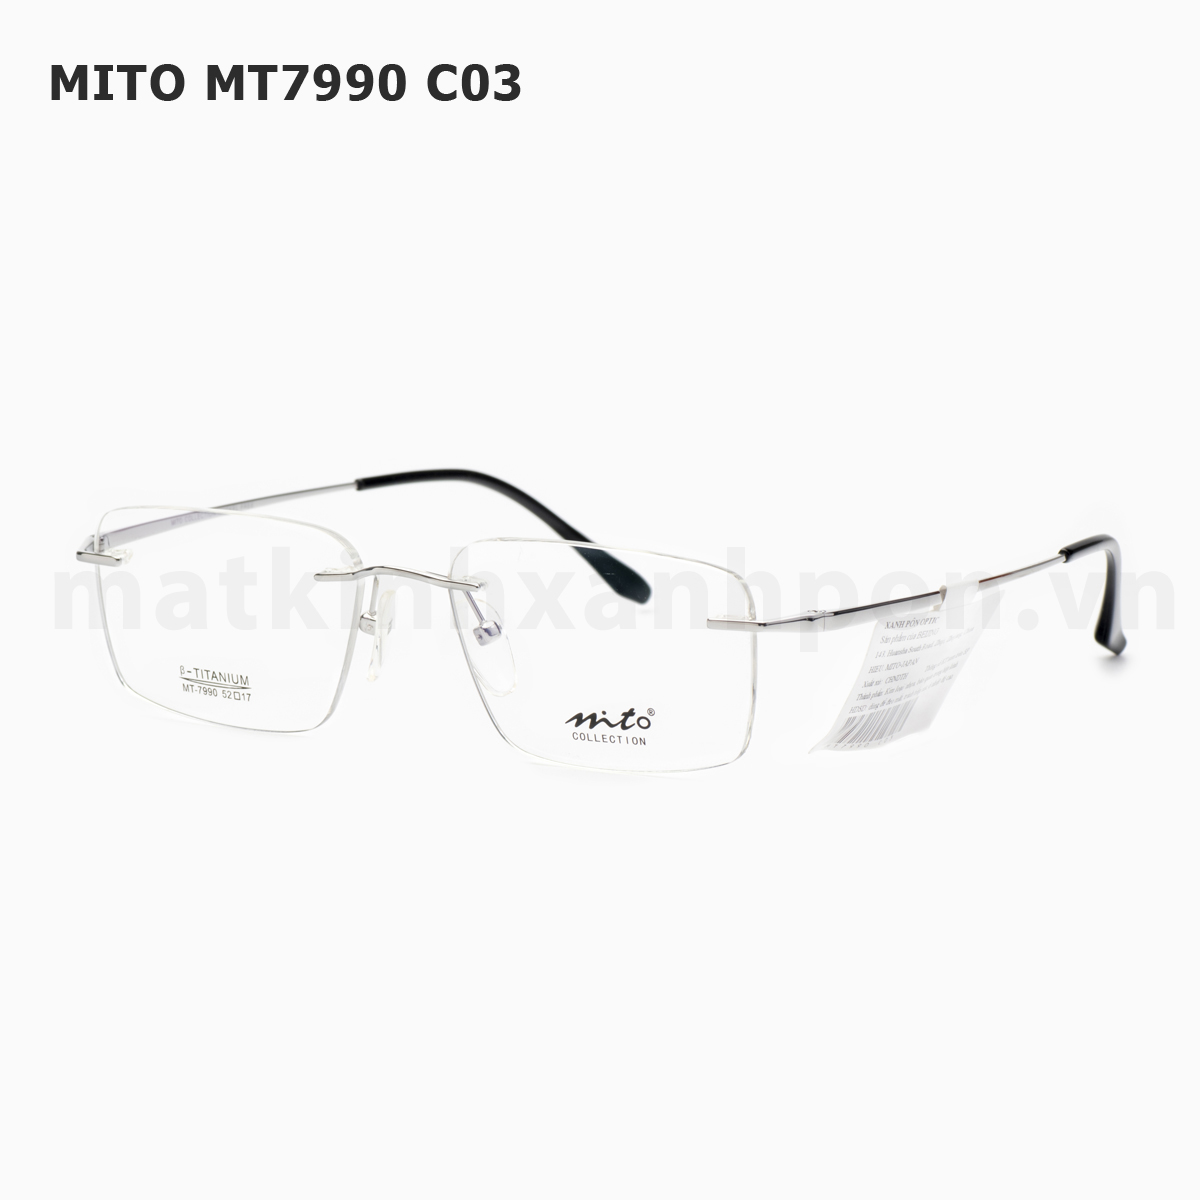 Mito MT7990 C03